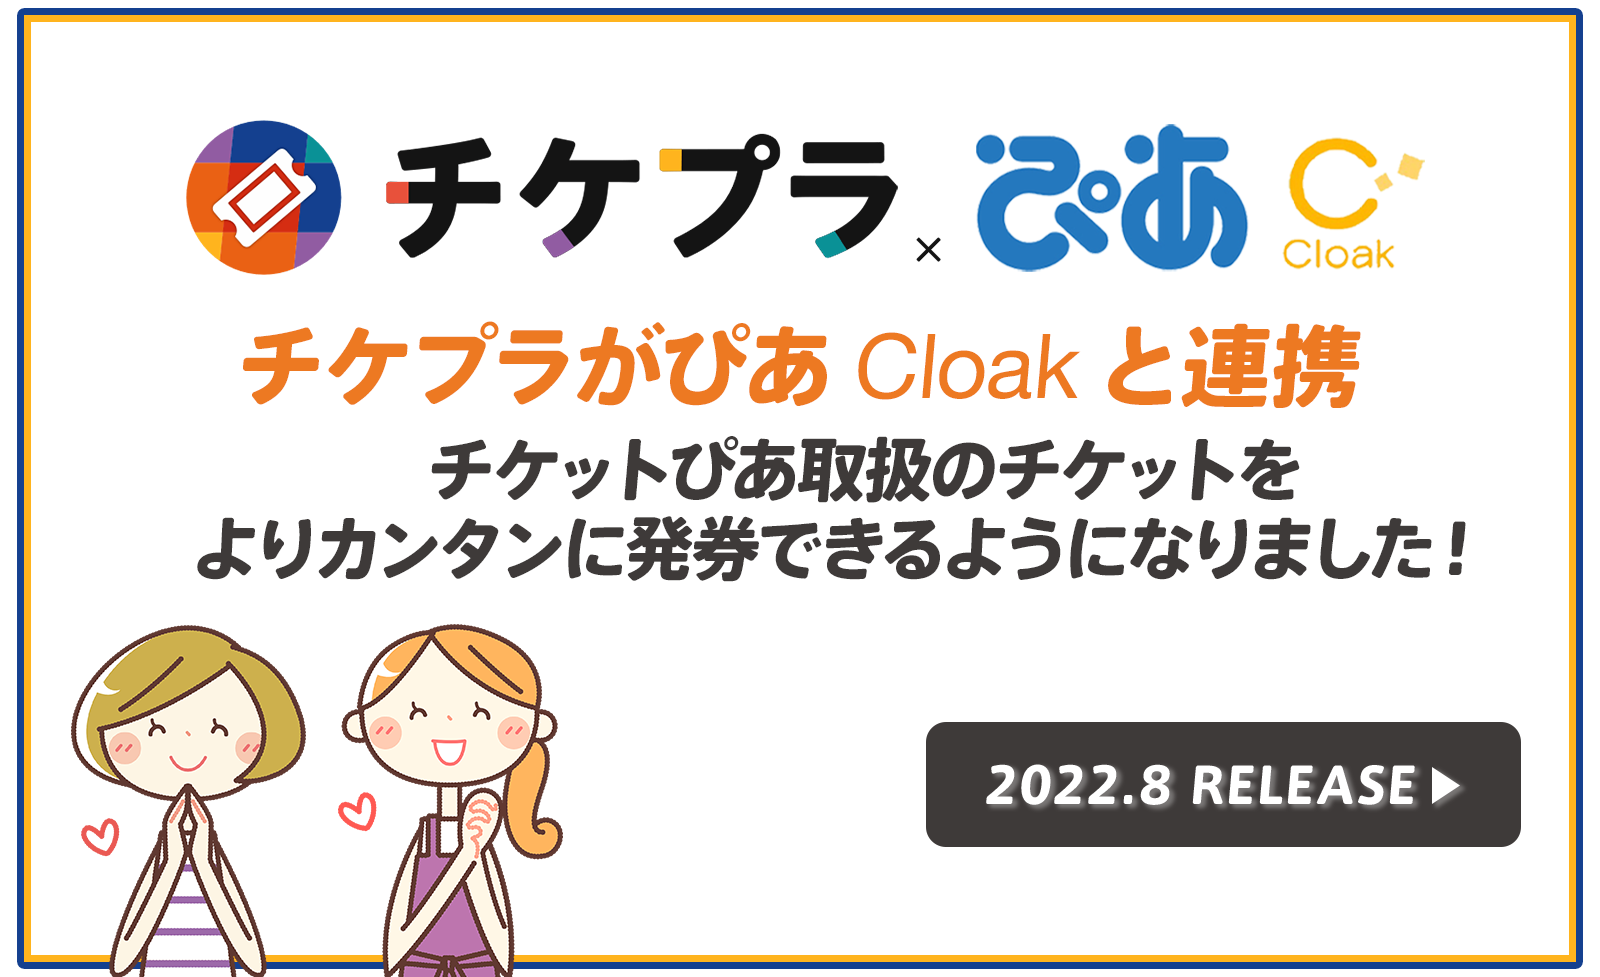 ぴあの Cloak サービスと チケプラ がシステム連携 株式会社tixplusのプレスリリース